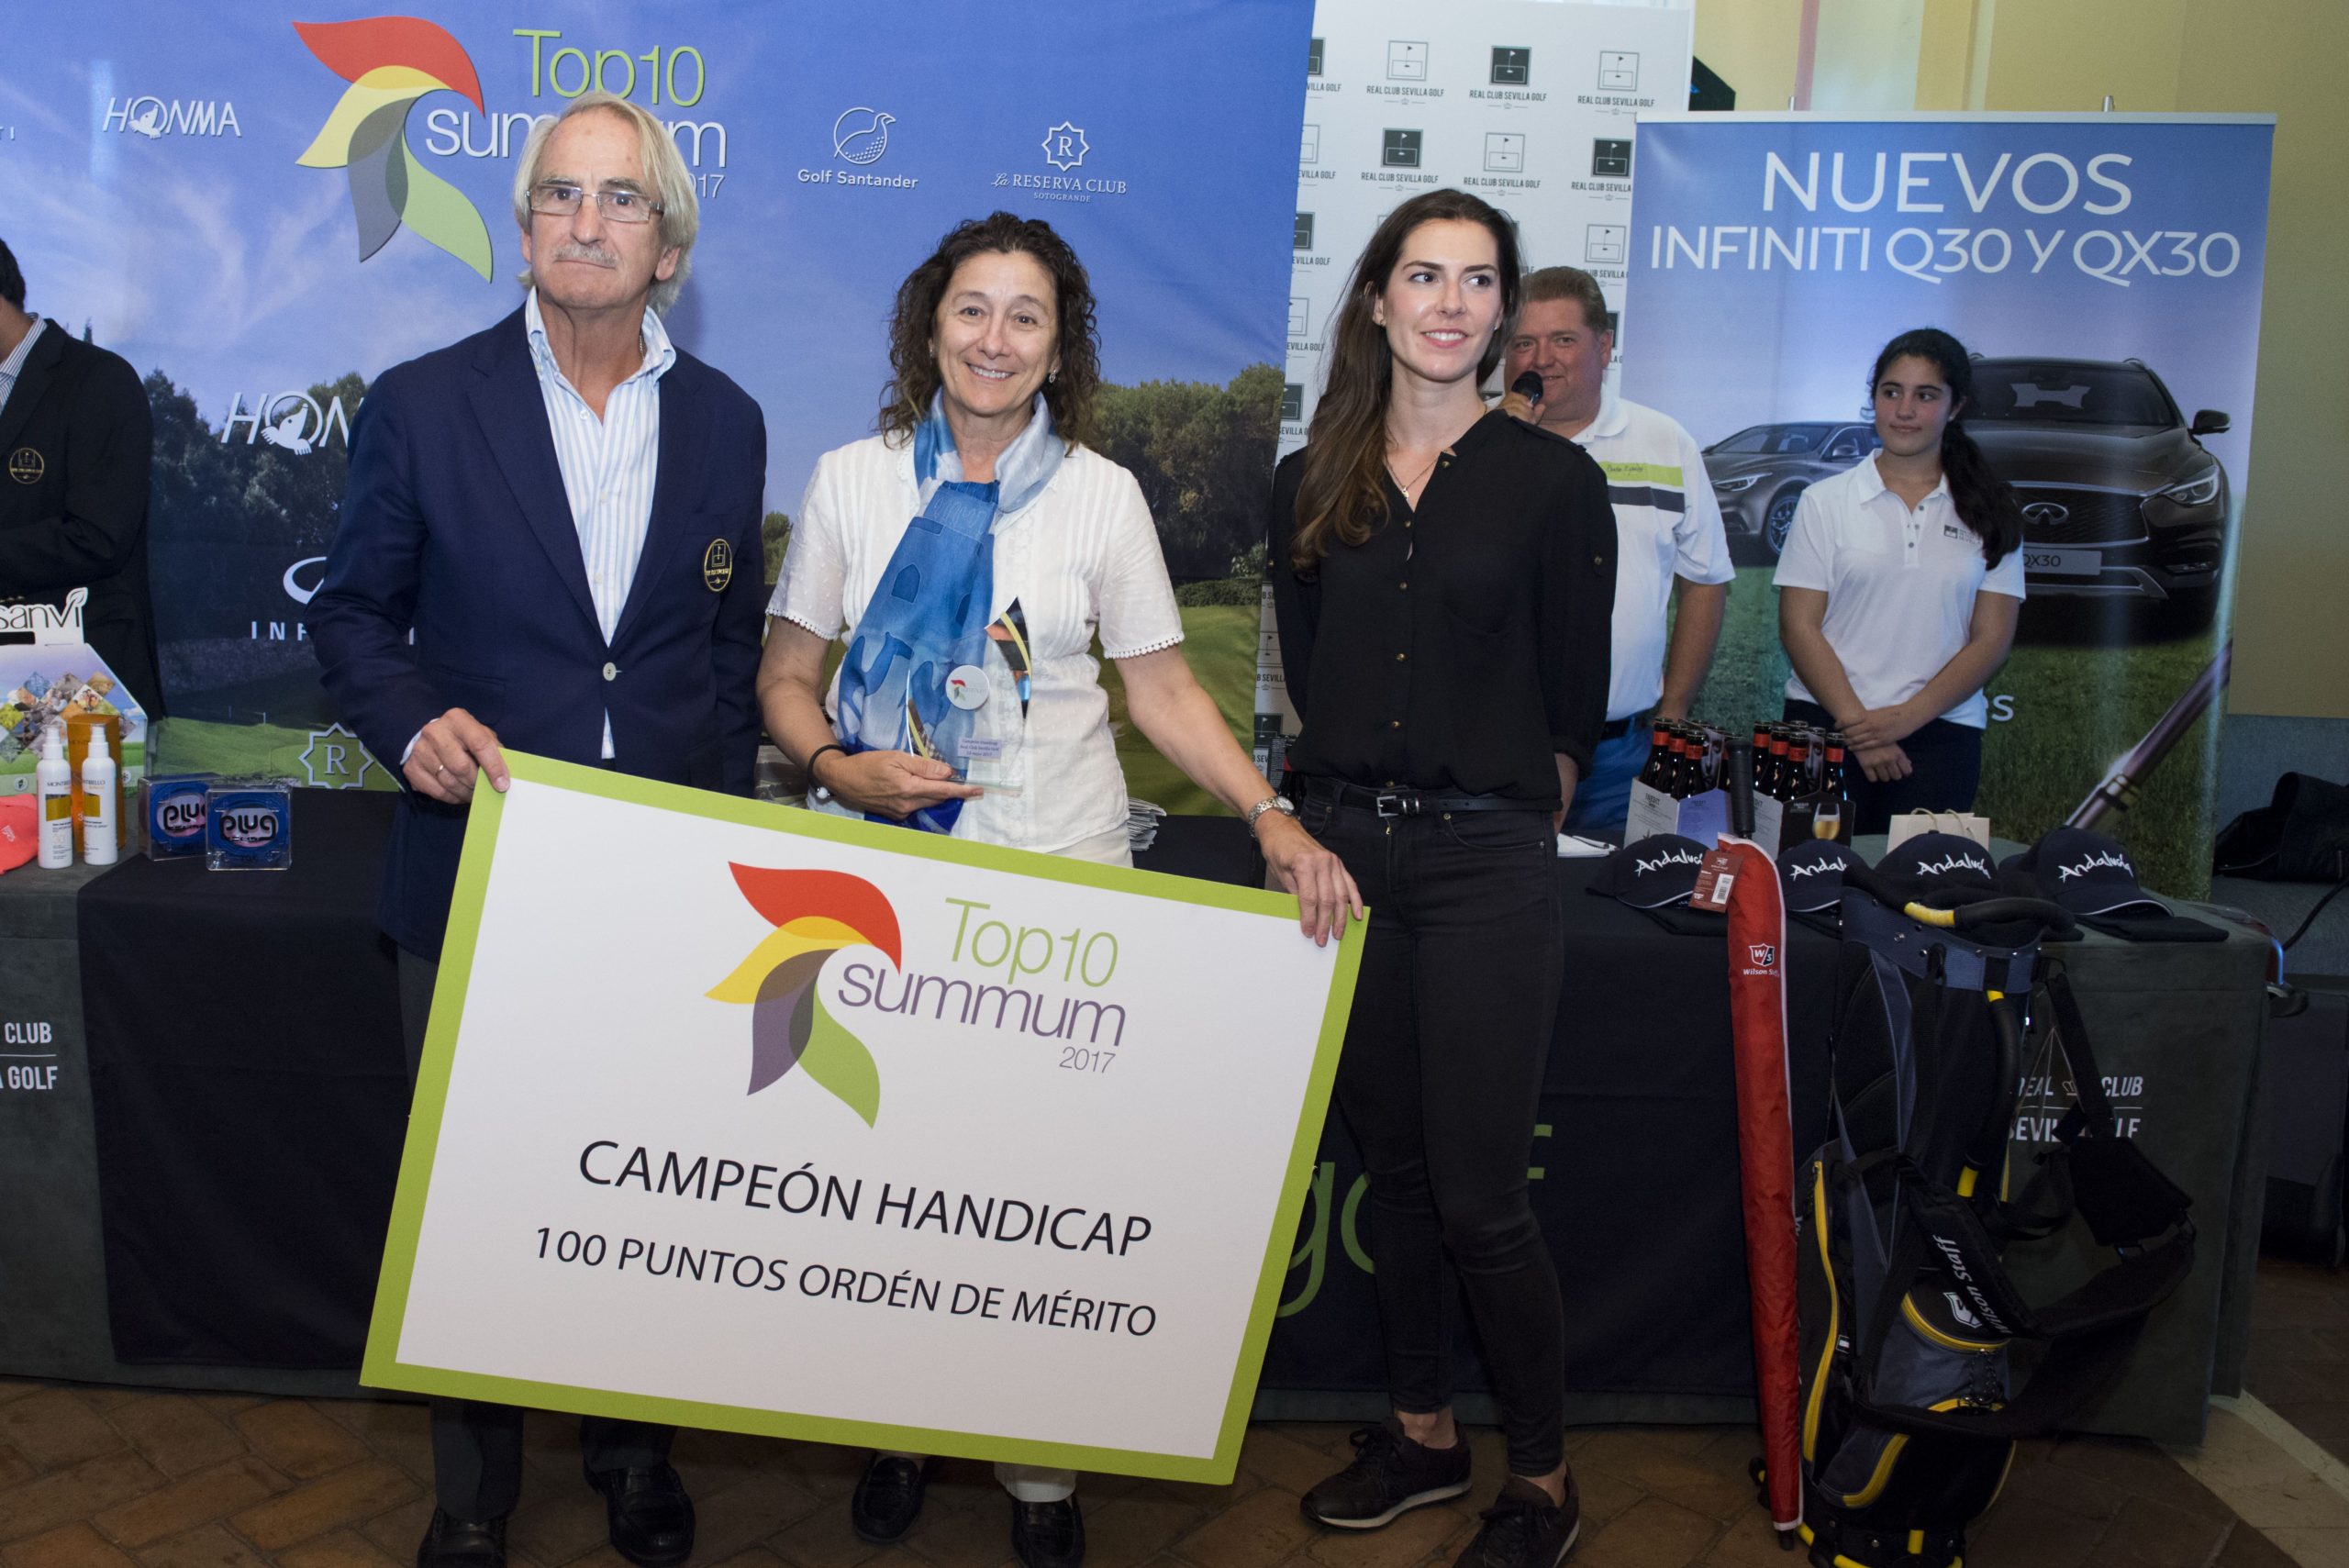 Pistoletazo de salida del Circuito Summum Top 10 en el Real Club Sevilla Golf